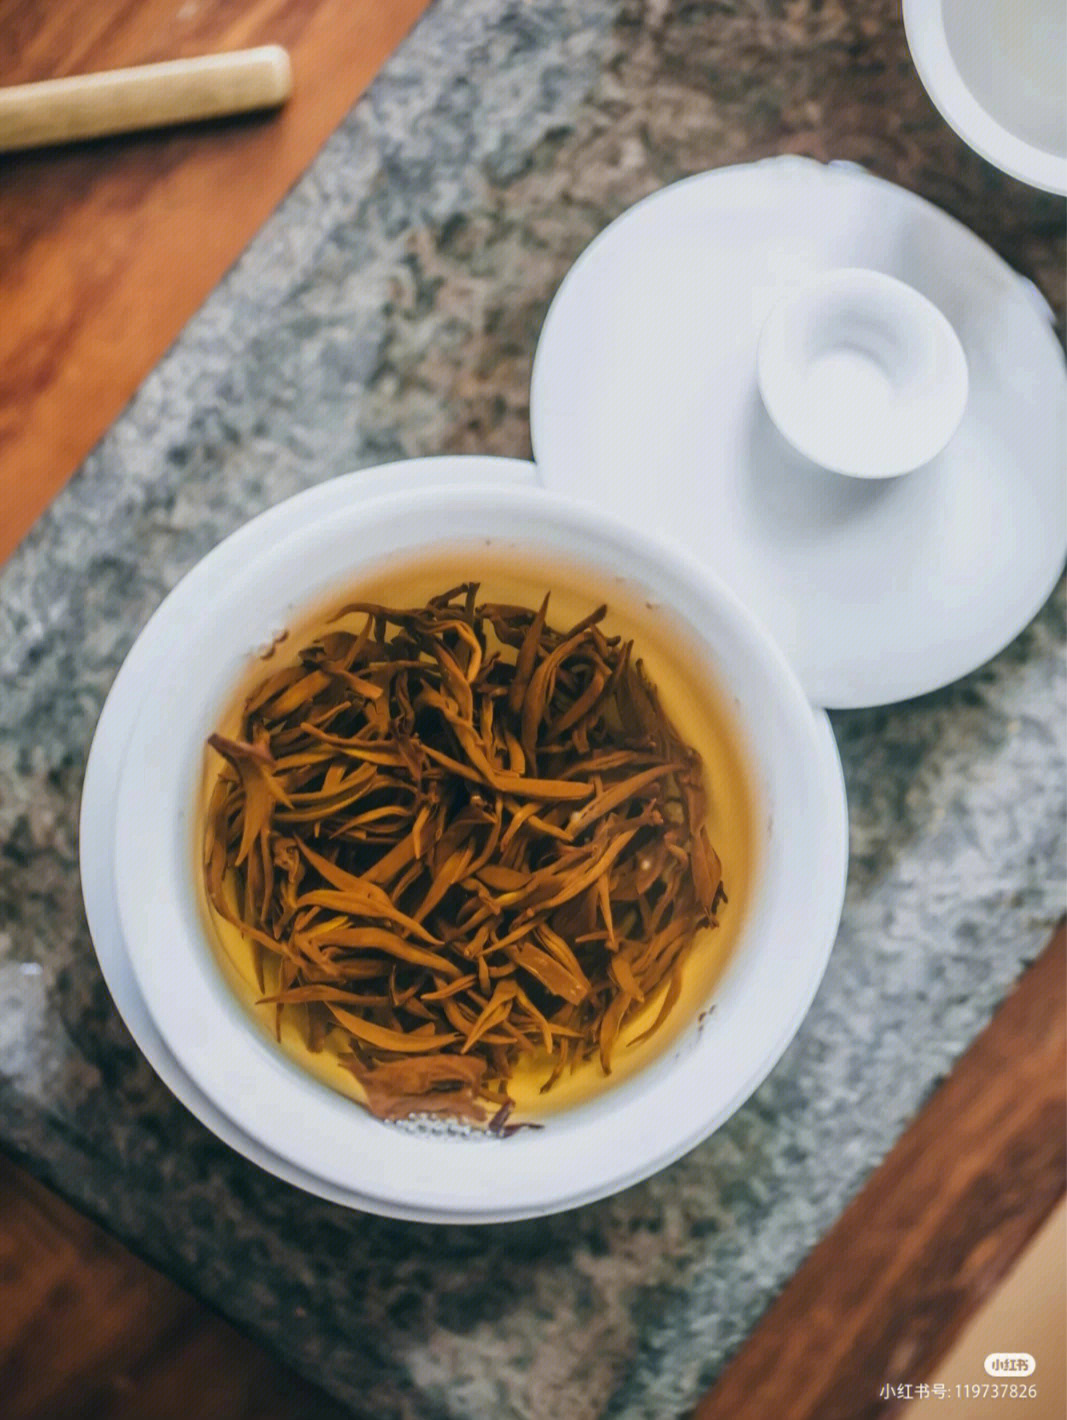 曾影响了世界红茶的格局:近年来,滇红更是因其出众的外形和内质,越来